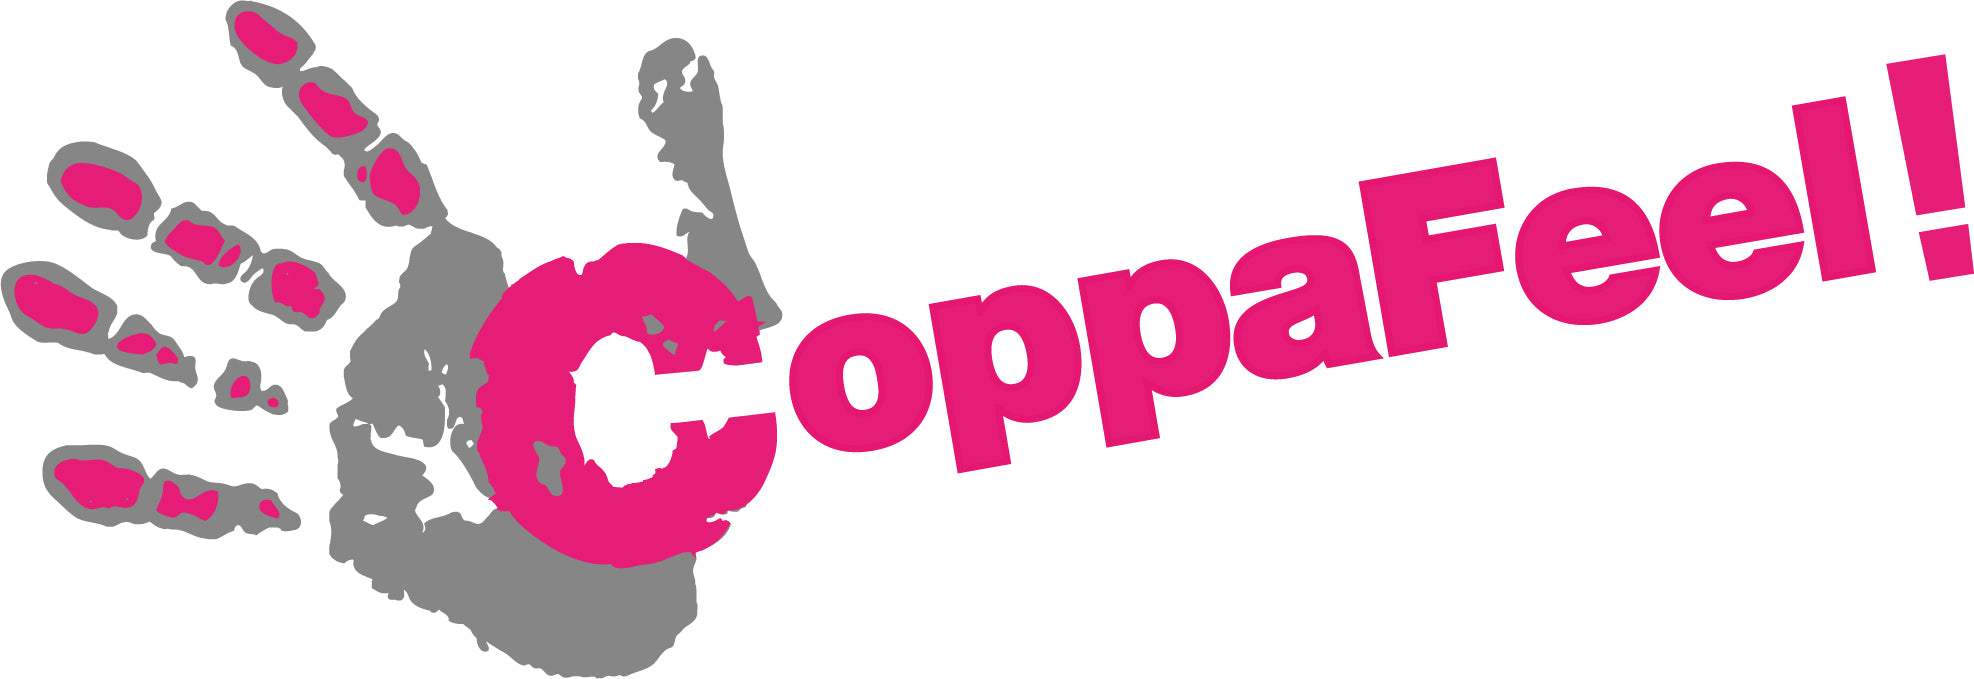 MAAREE Coppafeel logo